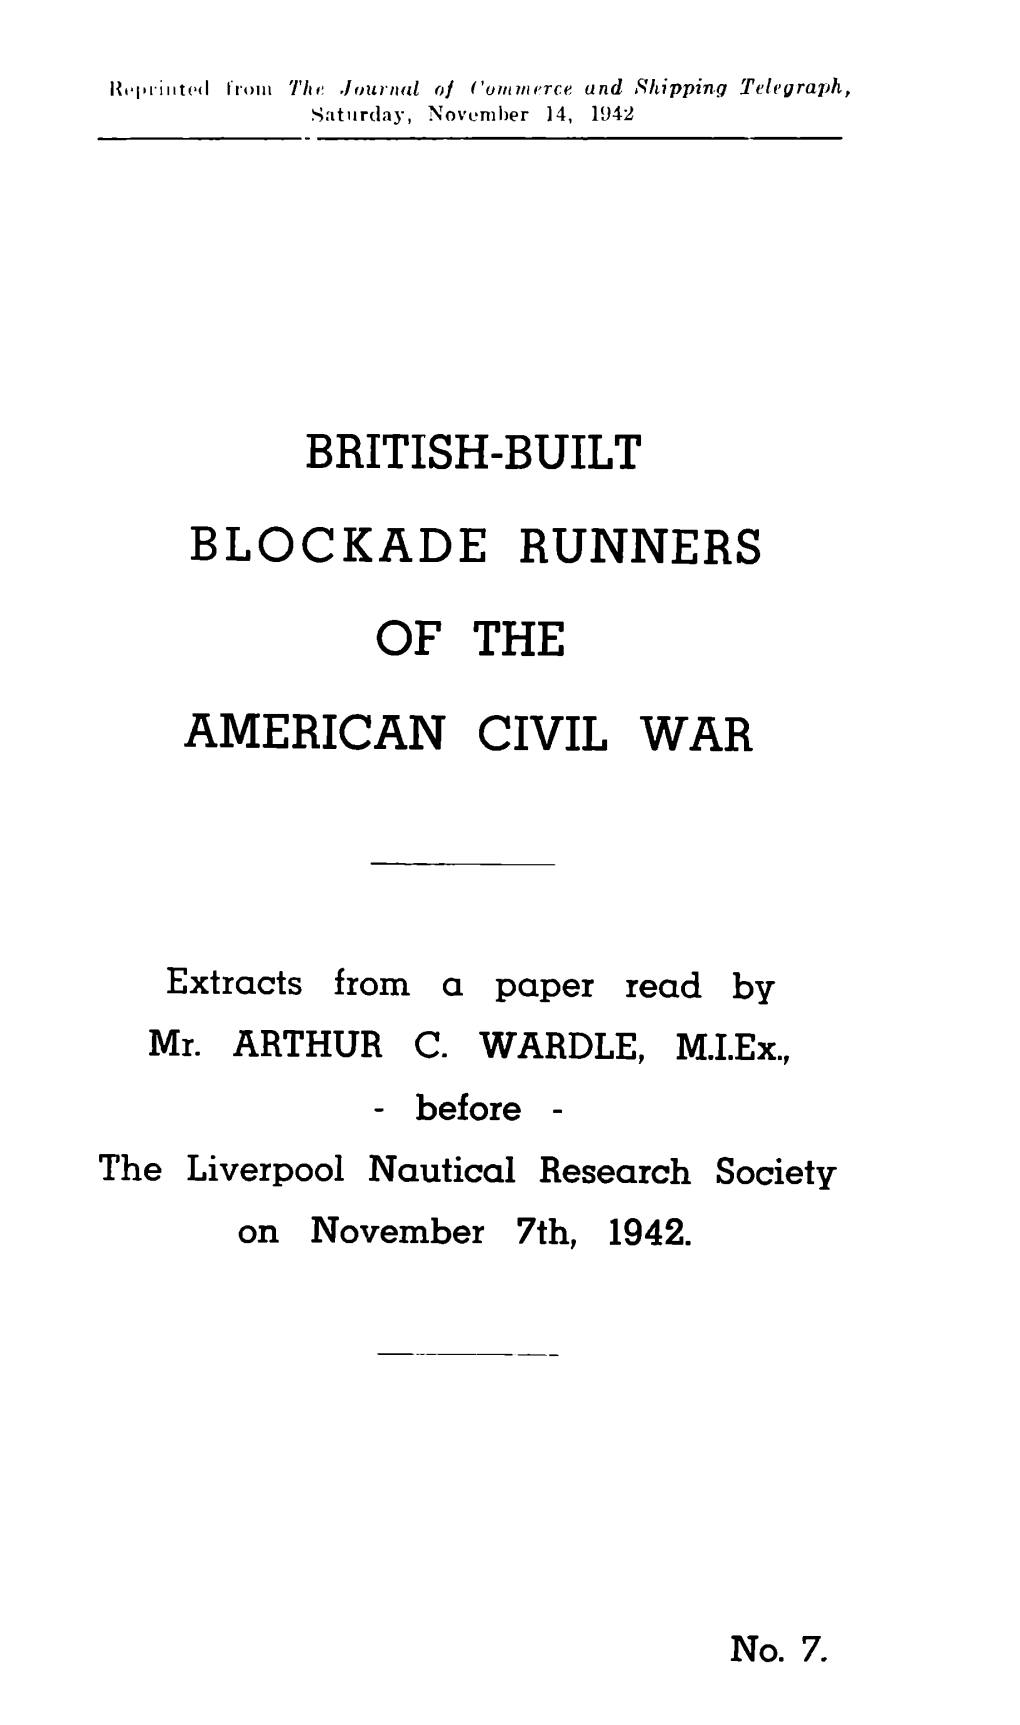 British-Built Blockade Runners of the American Civil War